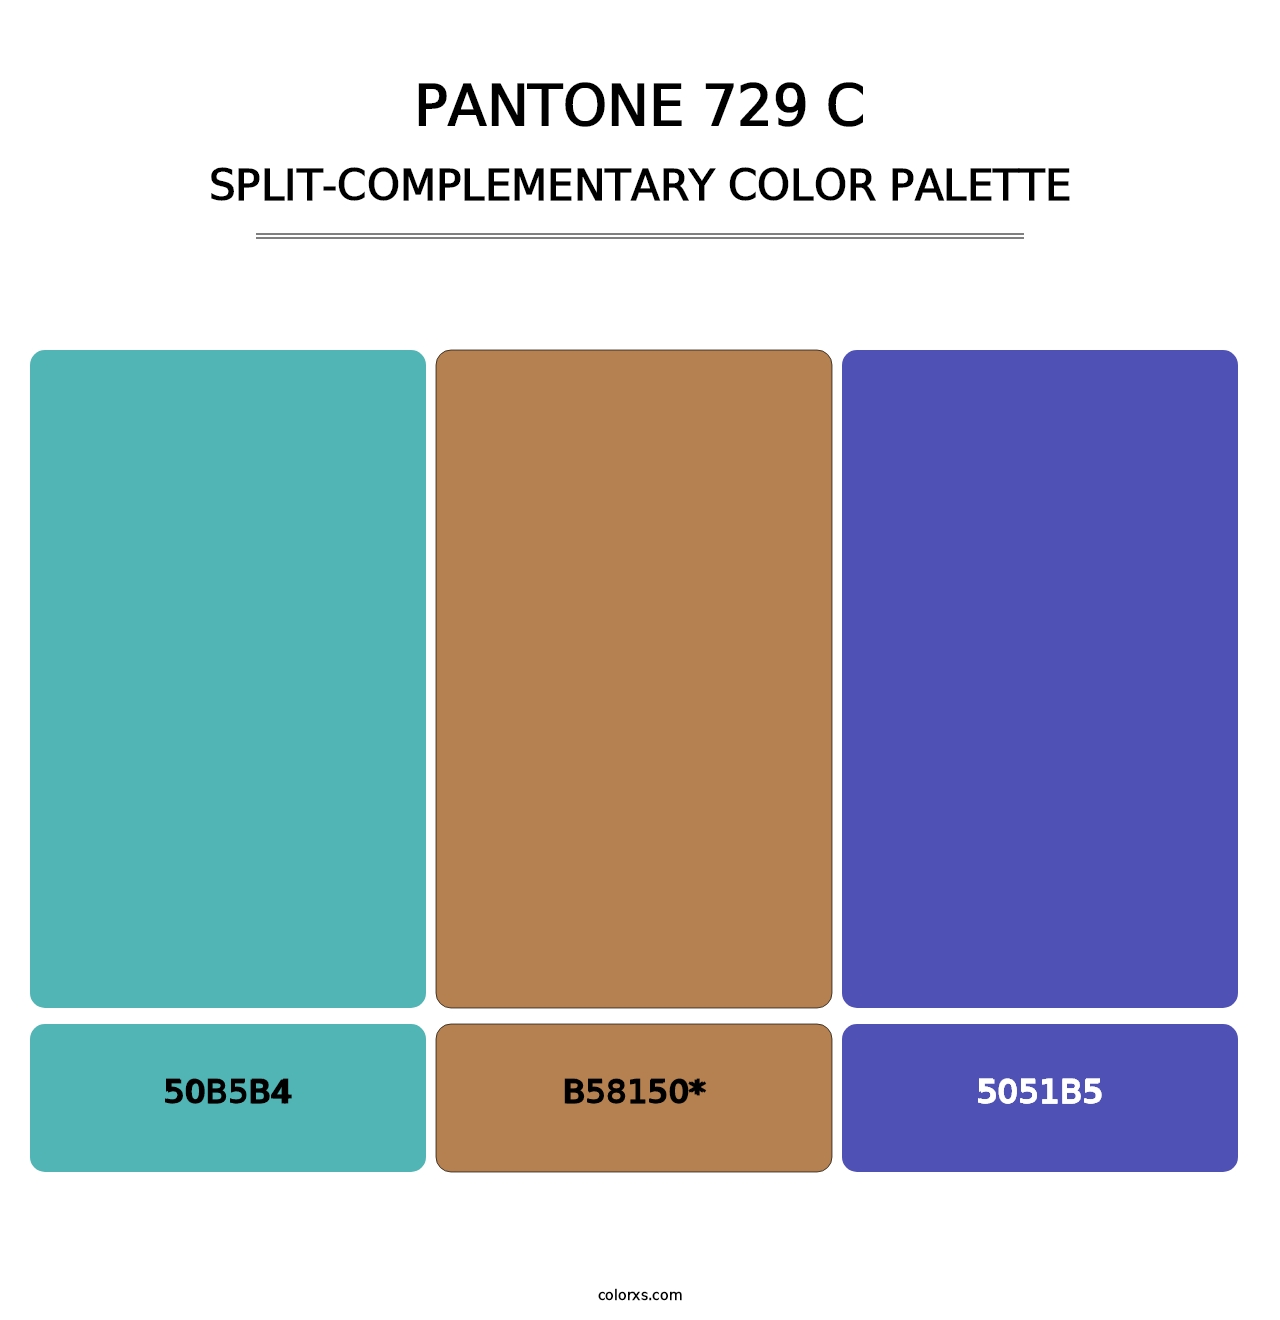 PANTONE 729 C - Split-Complementary Color Palette